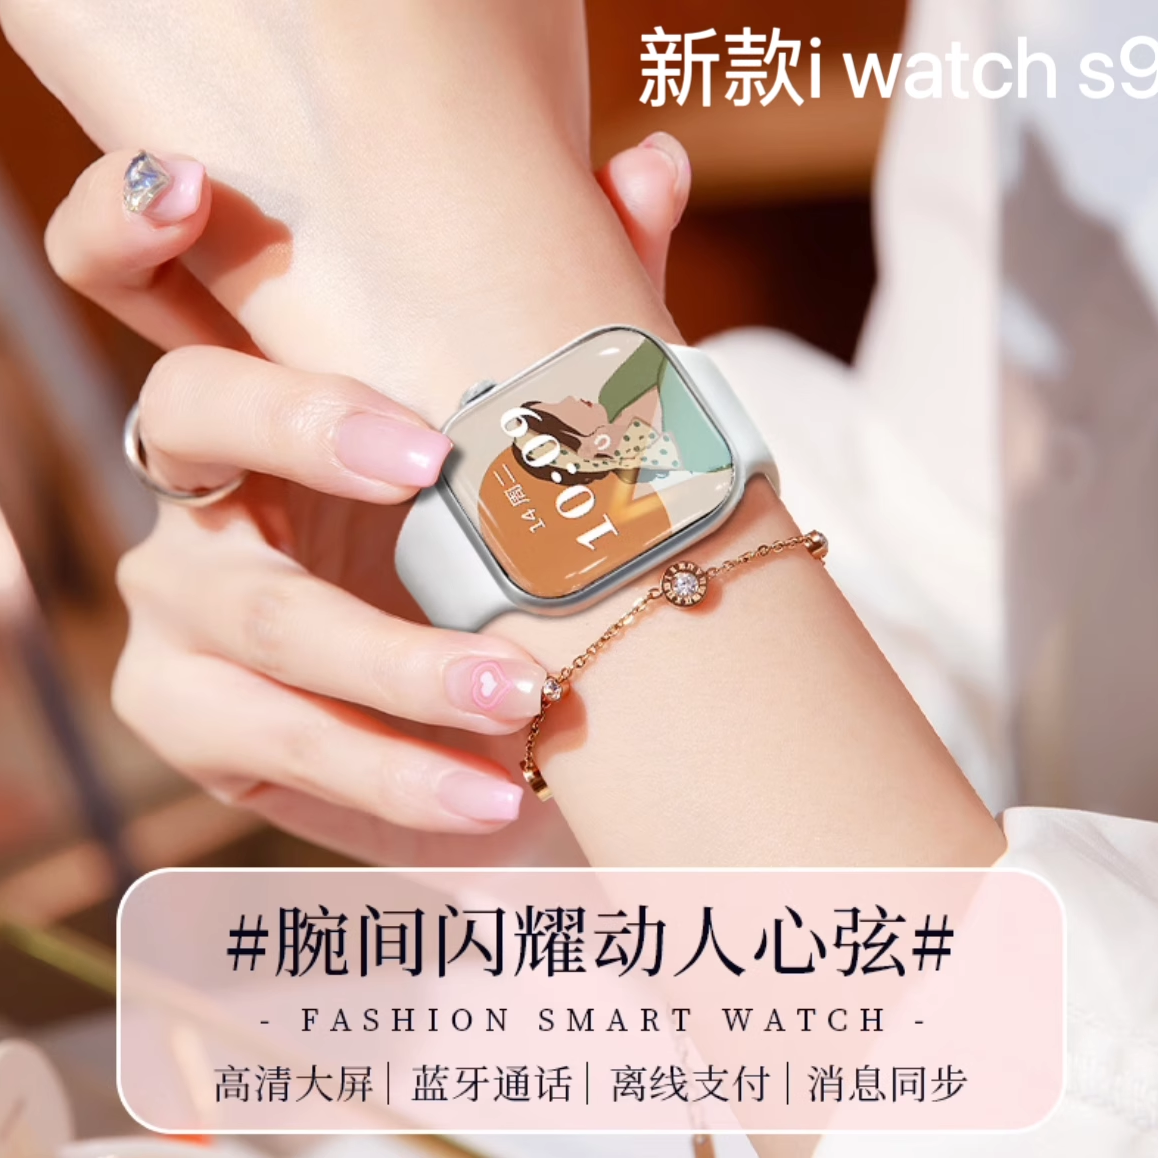 华强北watch手表新款s9顶配运动智能手表蓝牙适用appleiwatch苹果